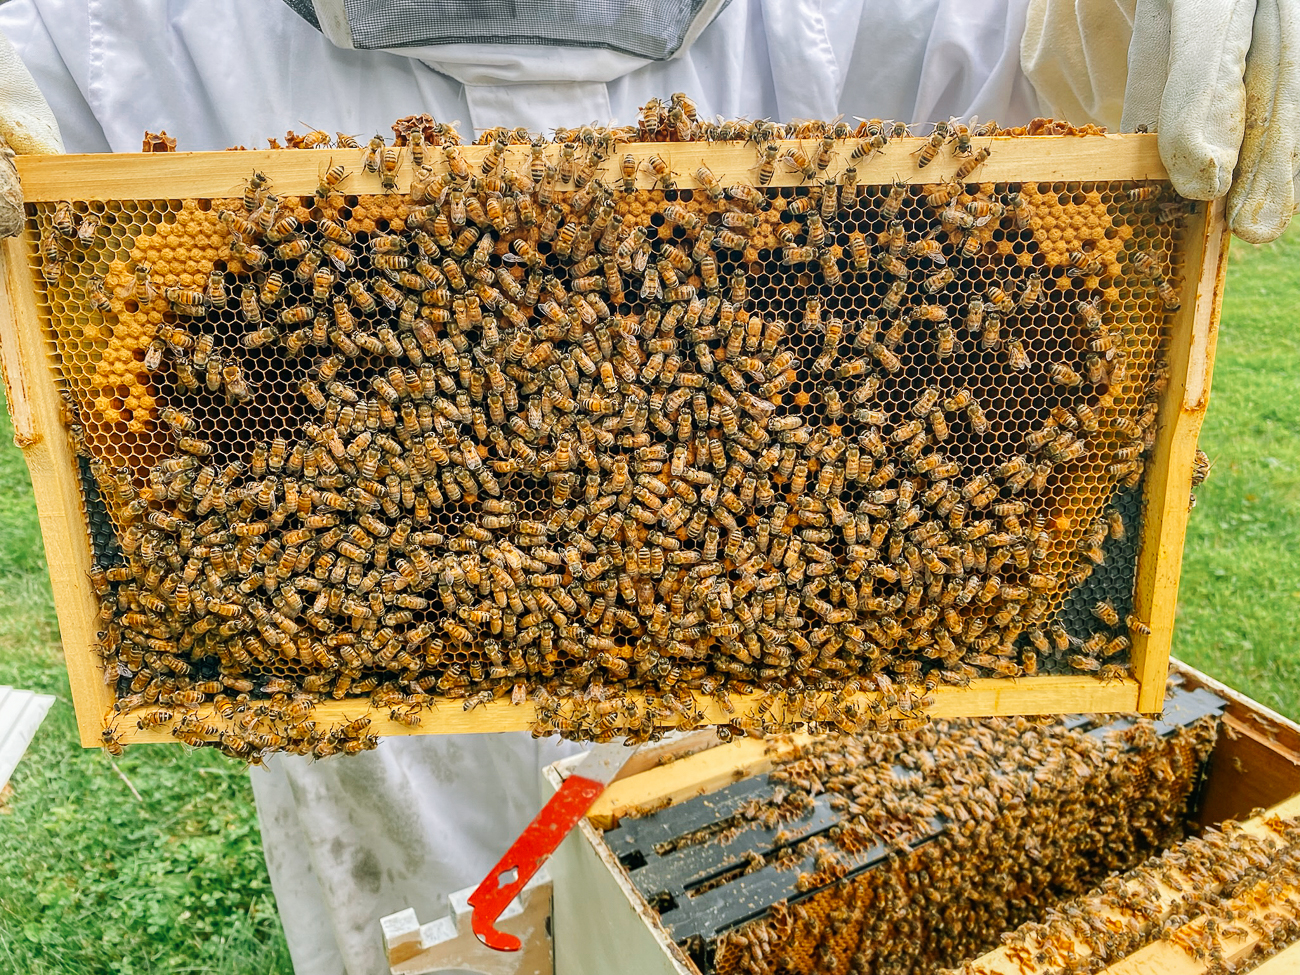 frame of honeybees